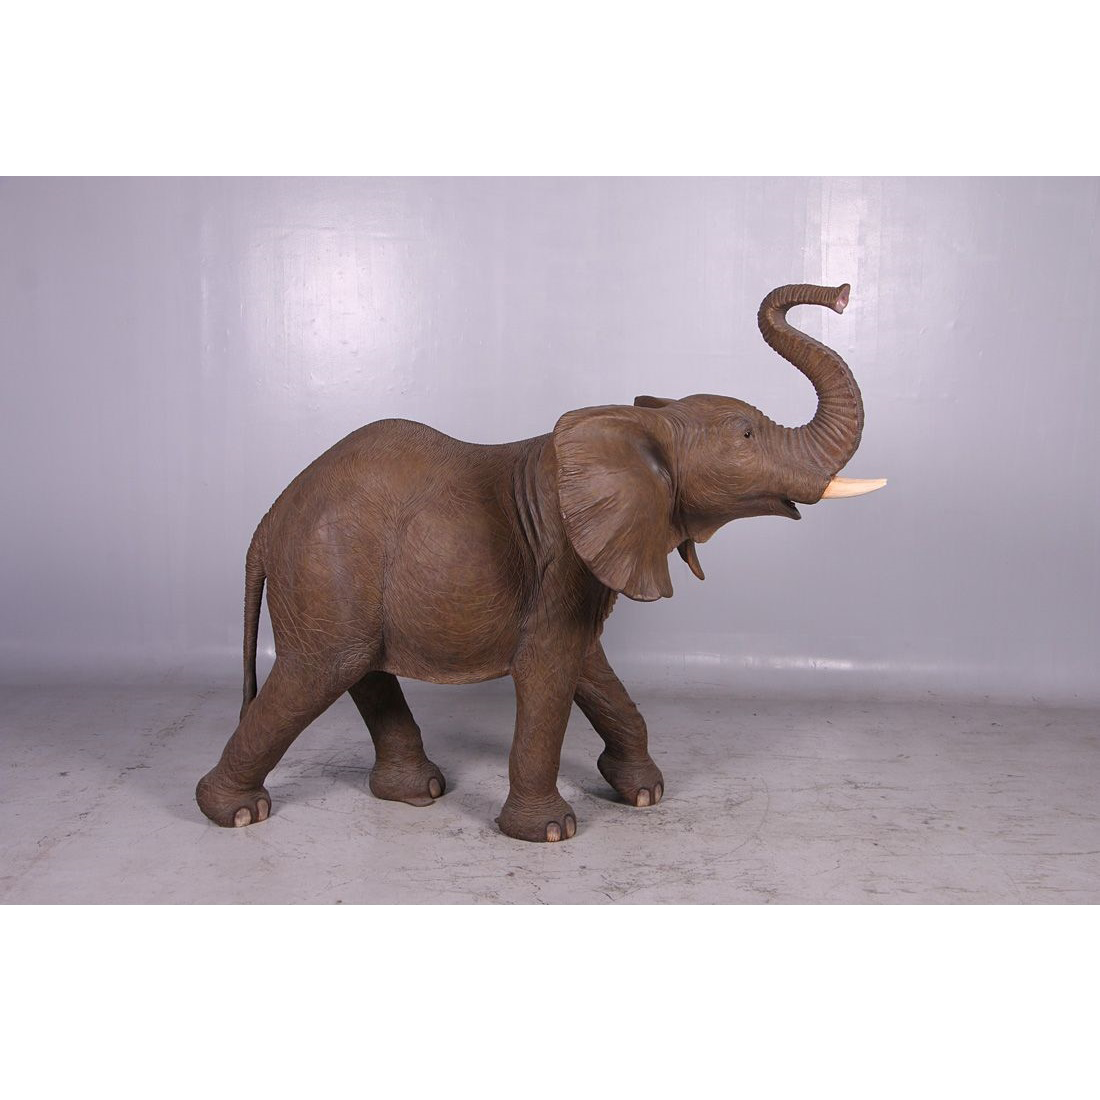 Elephant Statue (200 cm, 1400.-€) - India